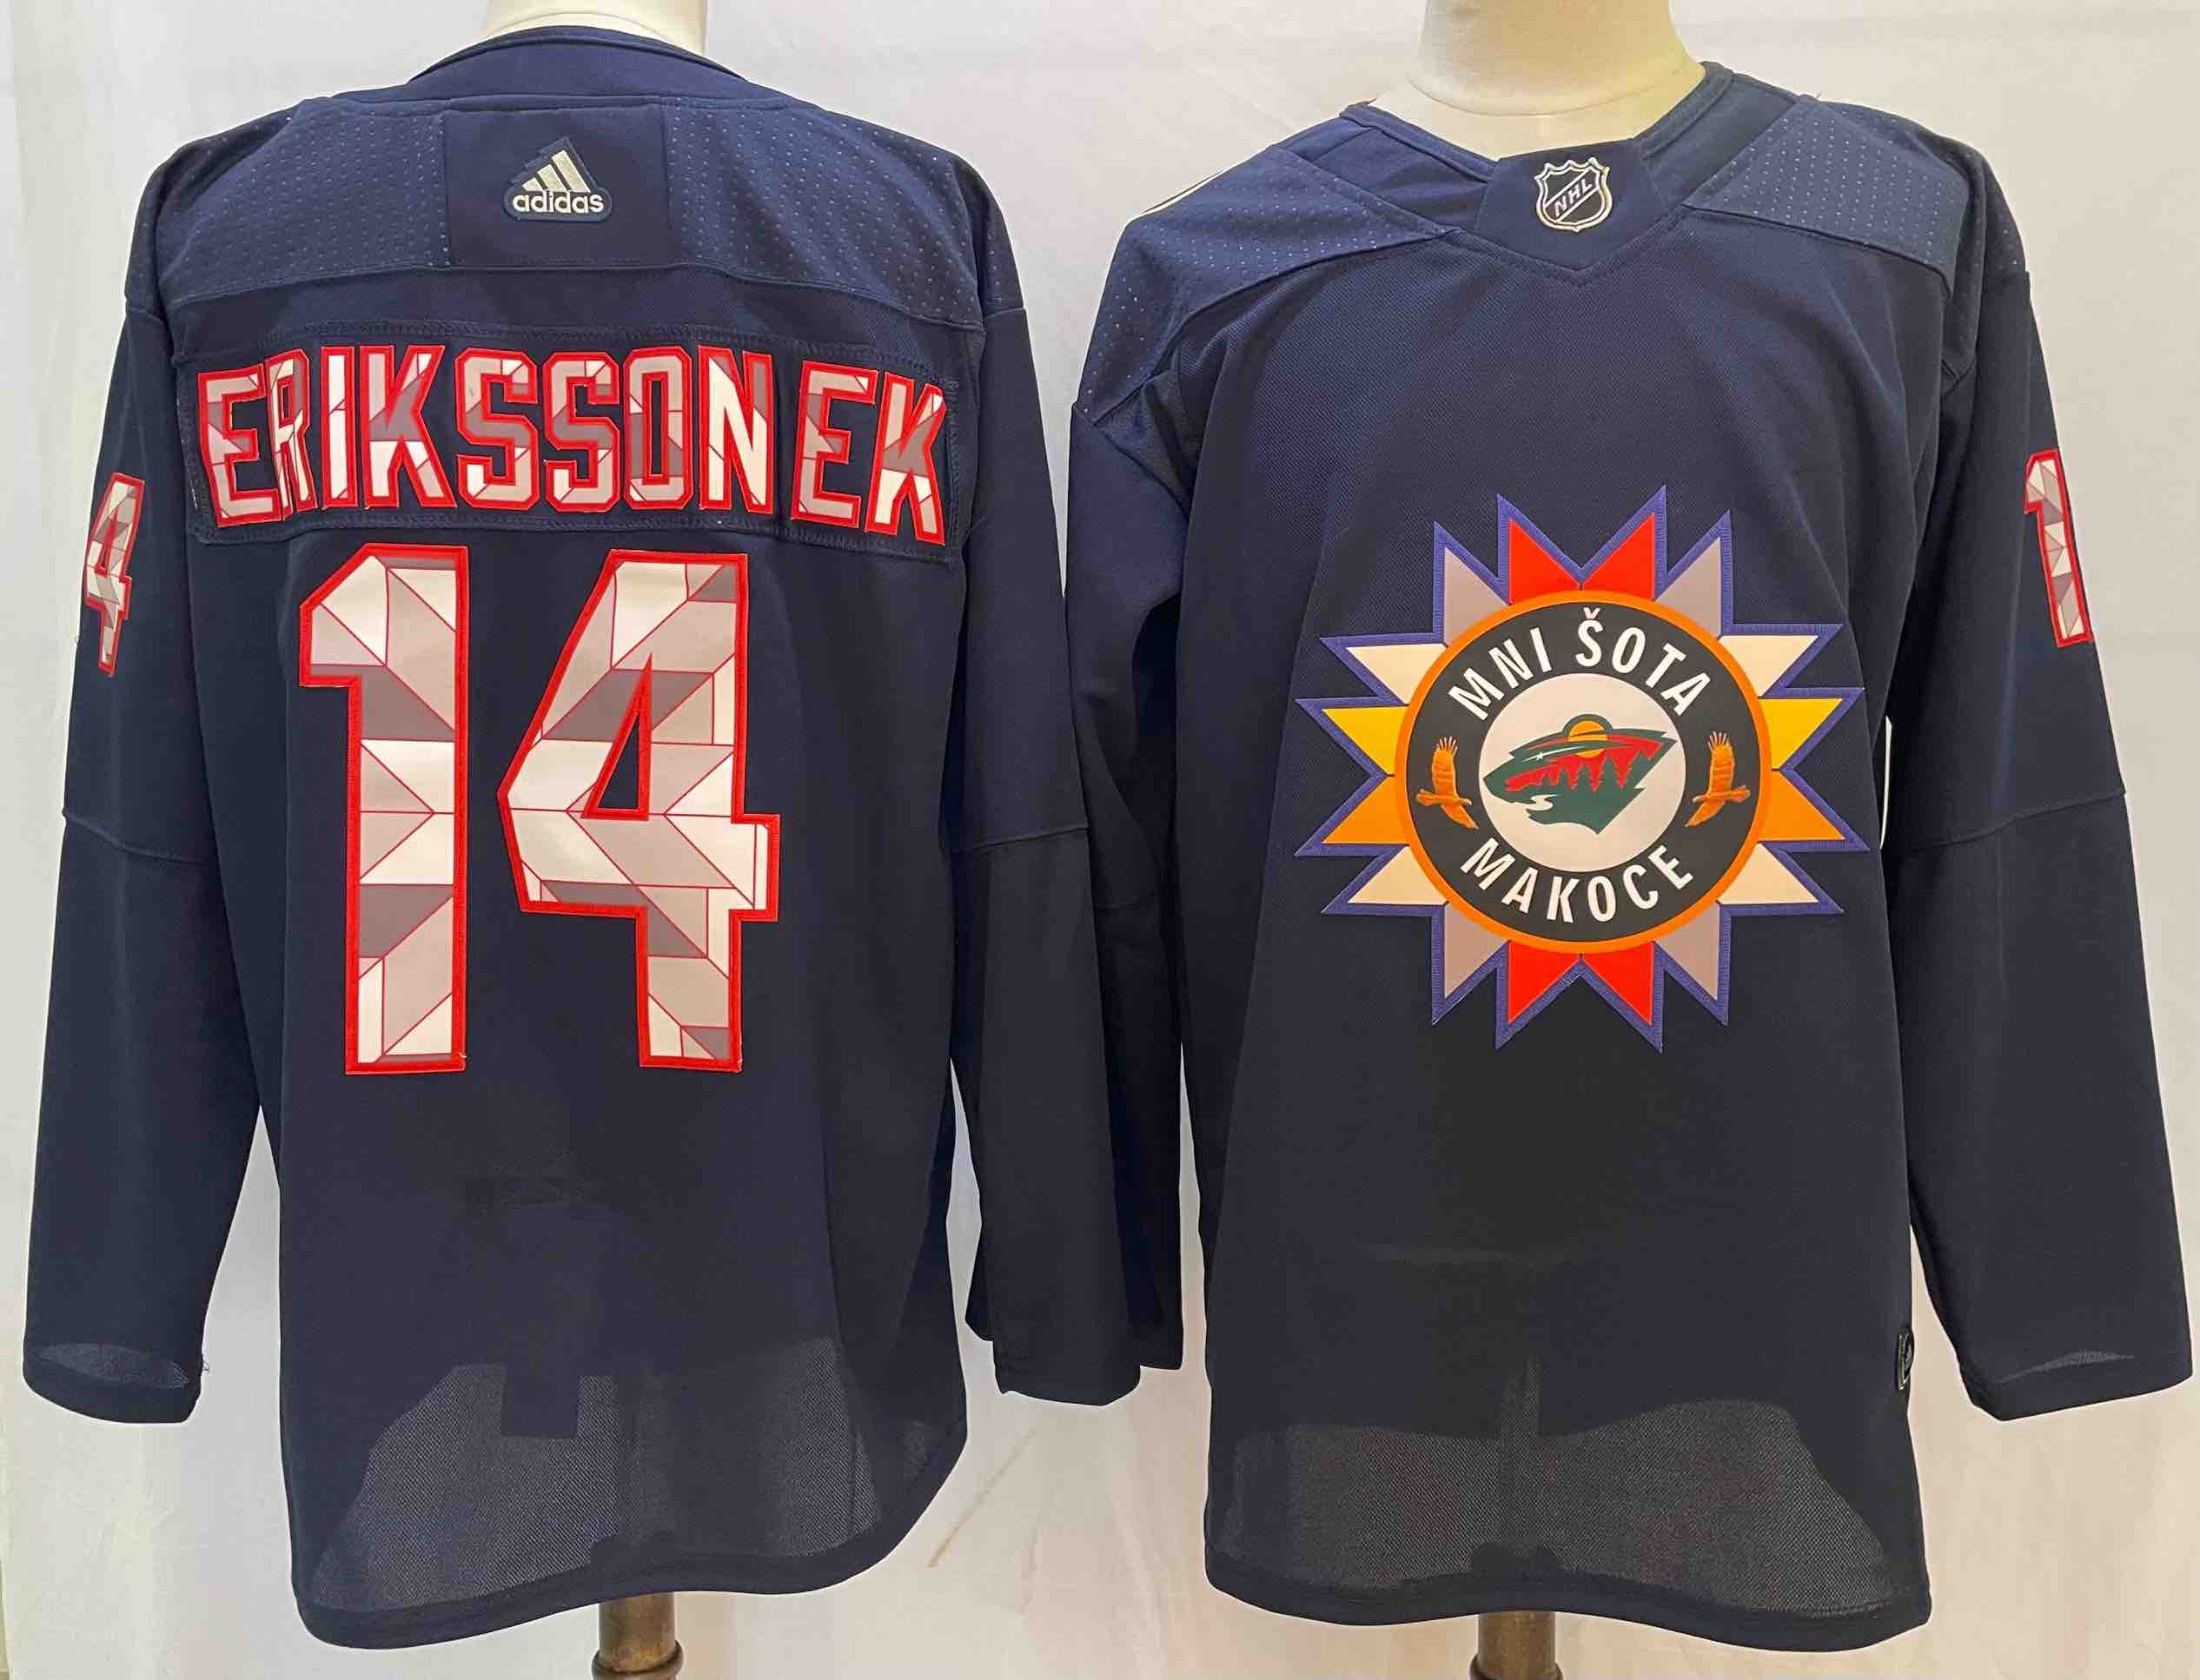 NHL Mnisota Makoce #14 Erikssonek Back Jersey